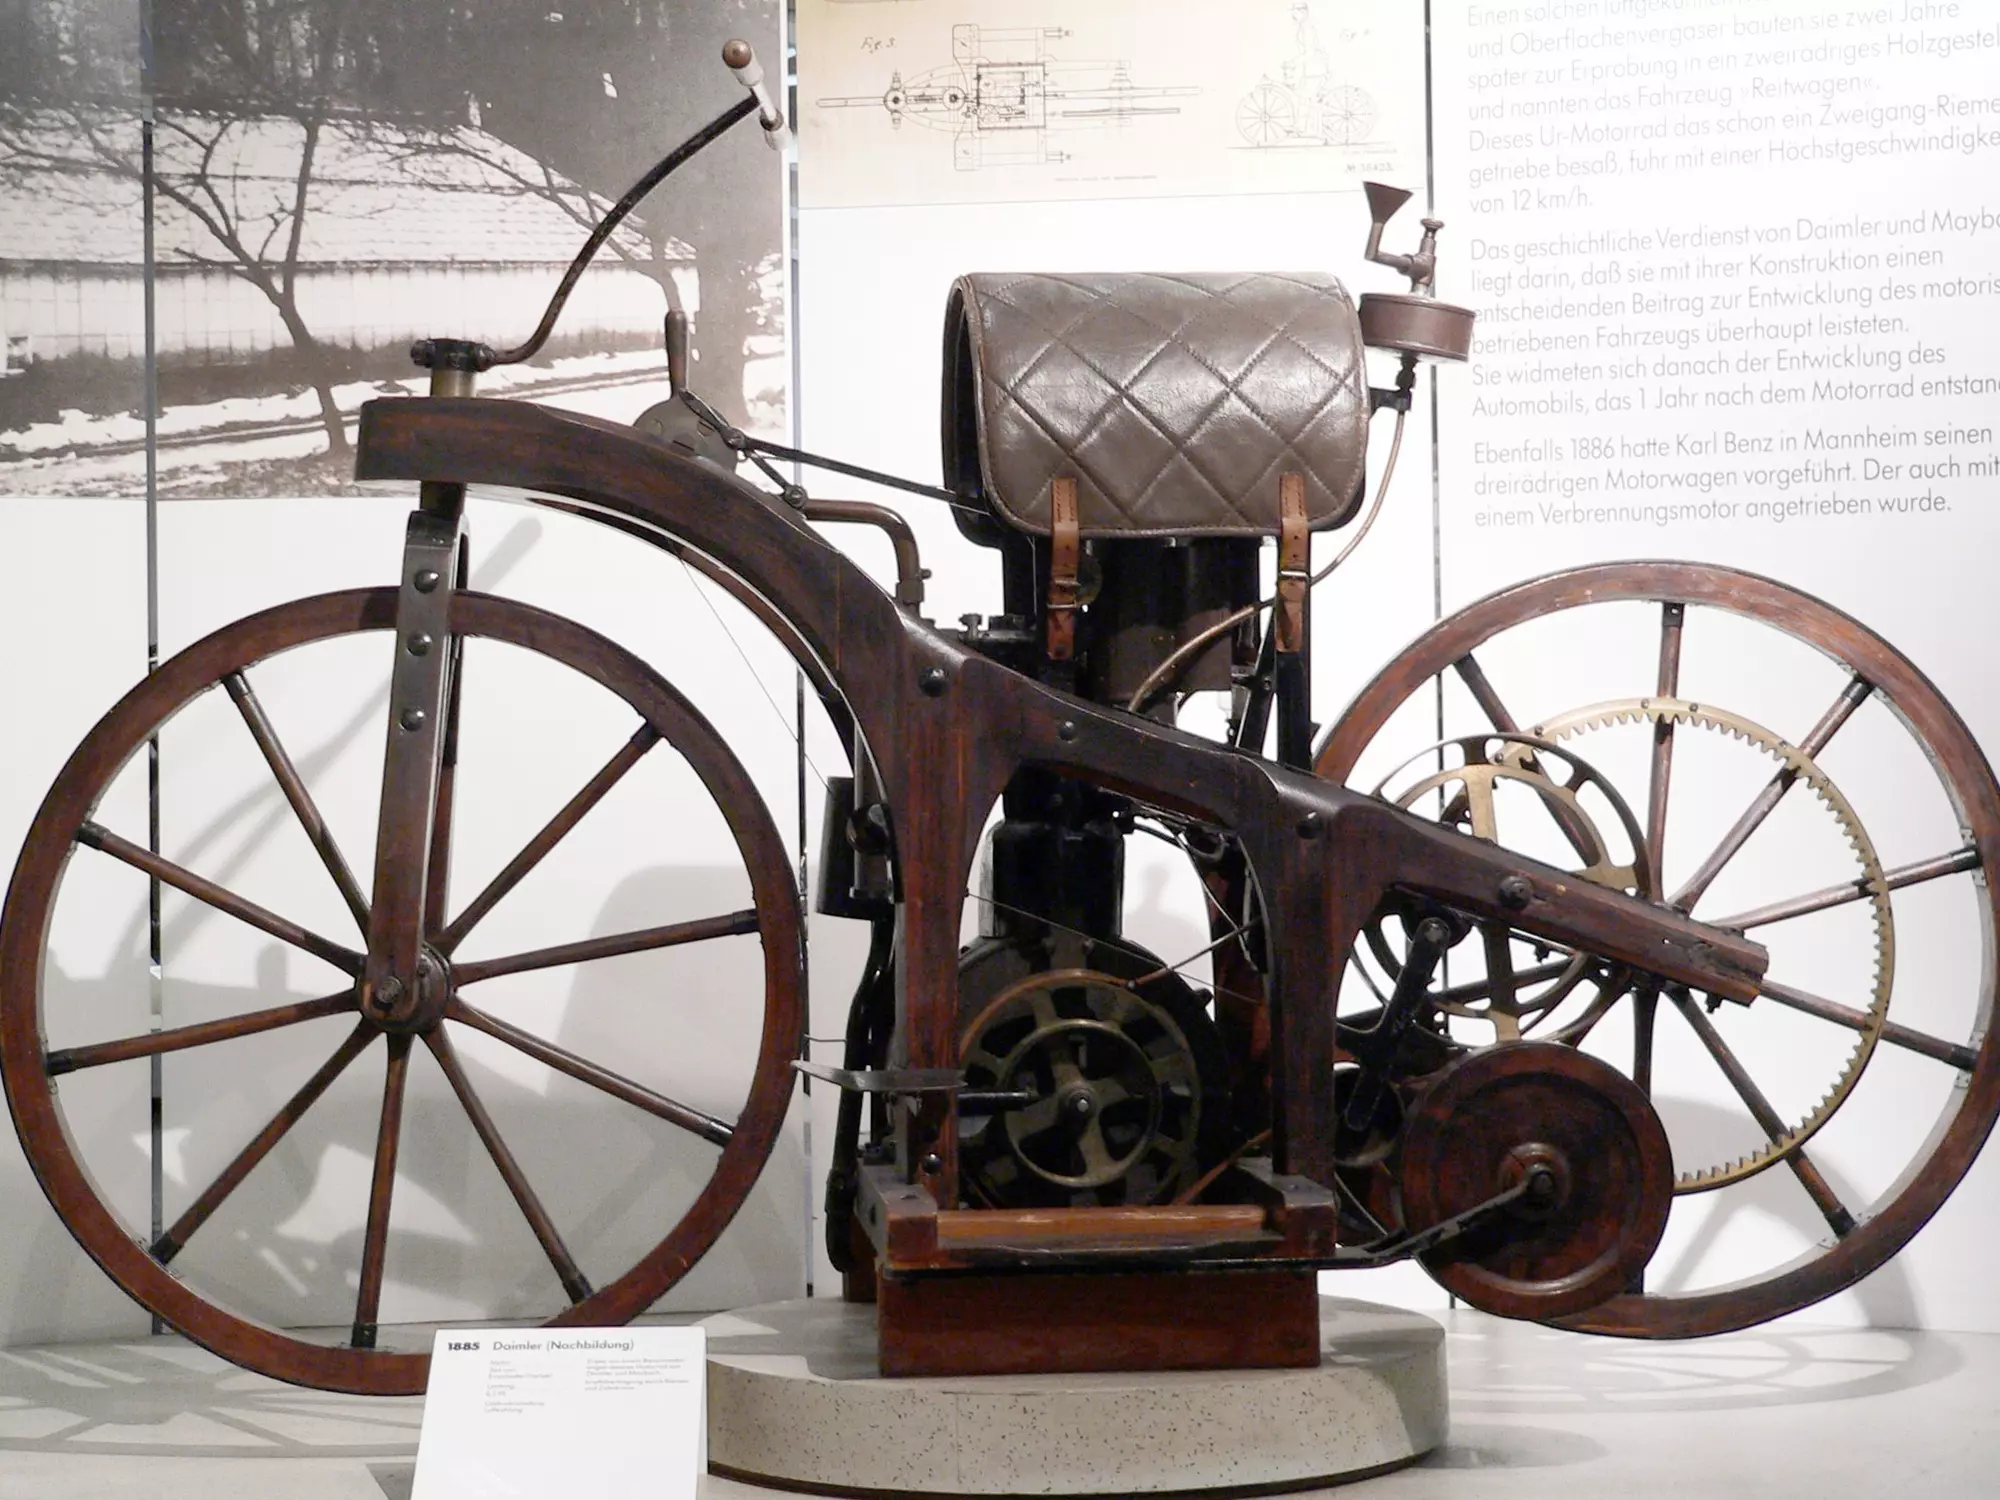 Předchůdce všech současných motorek, který v roce 1885 vyrobil Gottlieb Daimler